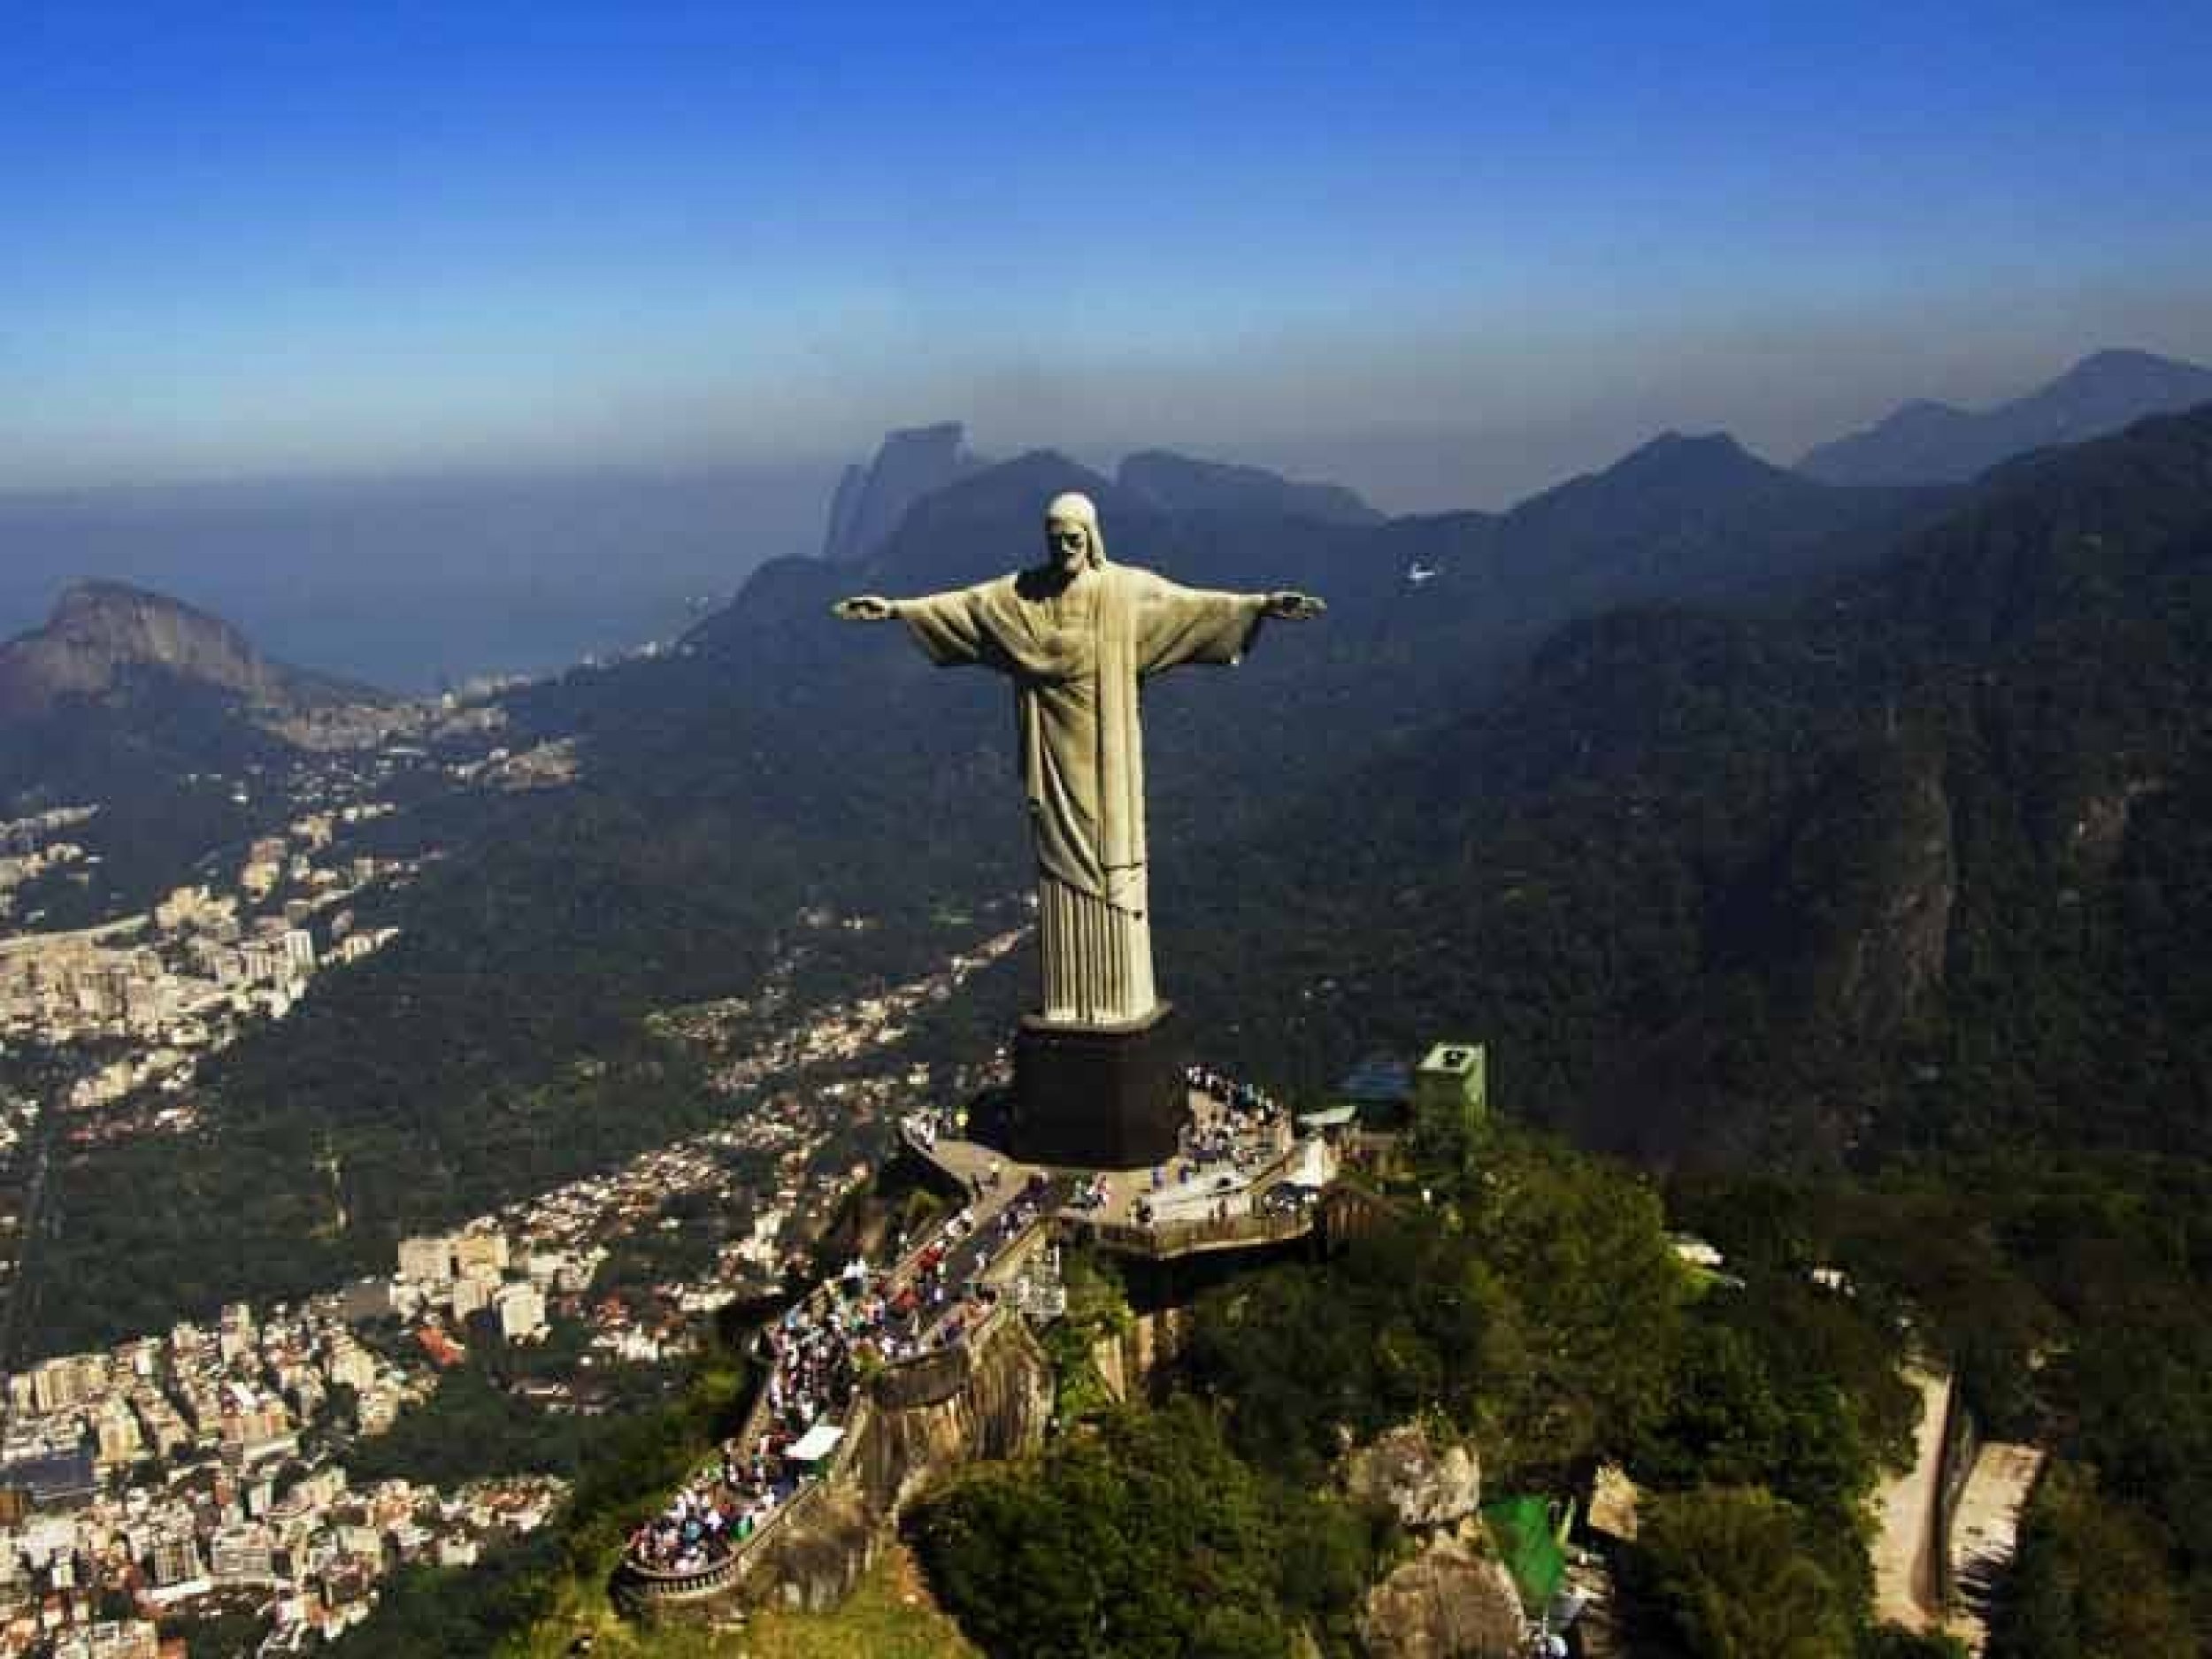 Whc unesco. Статуя Христа-Искупителя Бразилия. Достопримечательности Рио-де-Жанейро Бразилия. Бразилия объекты ЮНЕСКО статуя Христа. Южная Америка Рио де Жанейро.